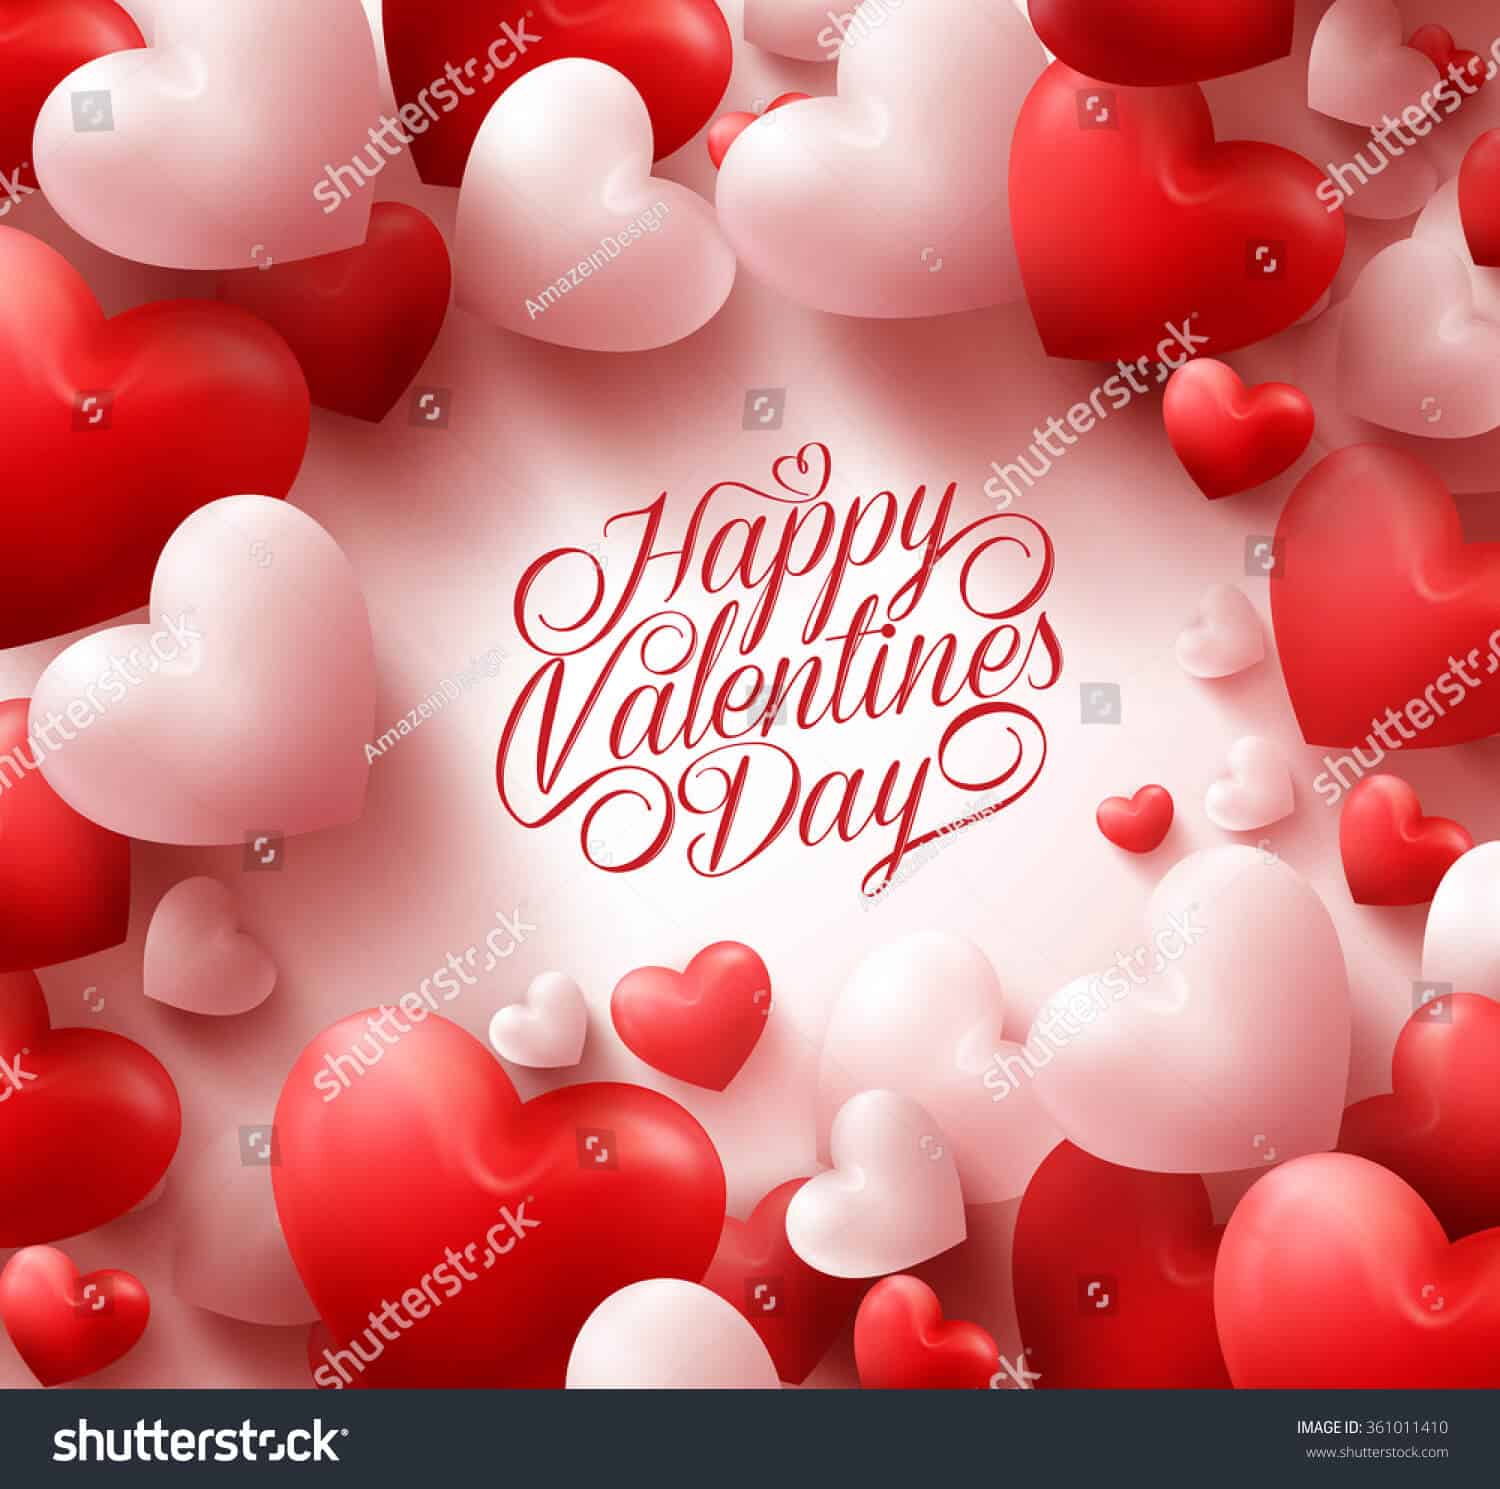 600 ngàn hình ảnh nền trái tim valentine tuyệt đẹp chất lượng cao